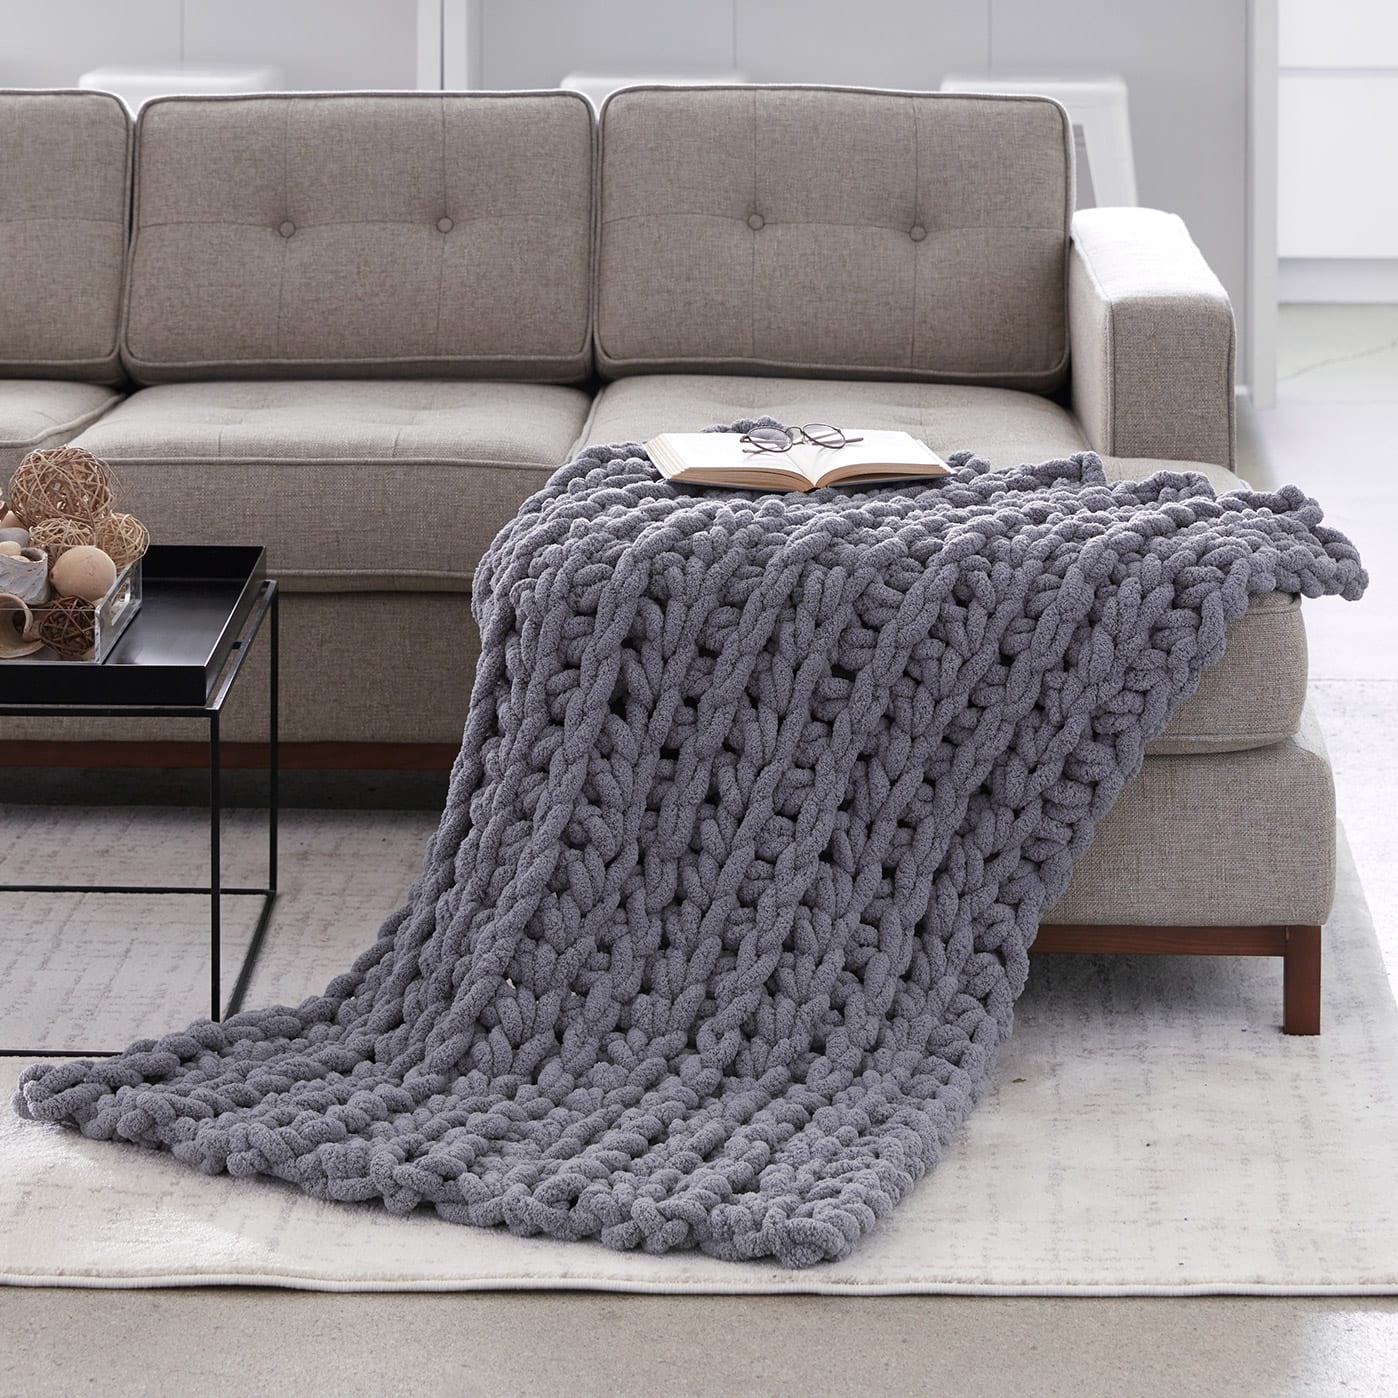 Bernat® Blanket™ Big Wheel (Crochet), Projects